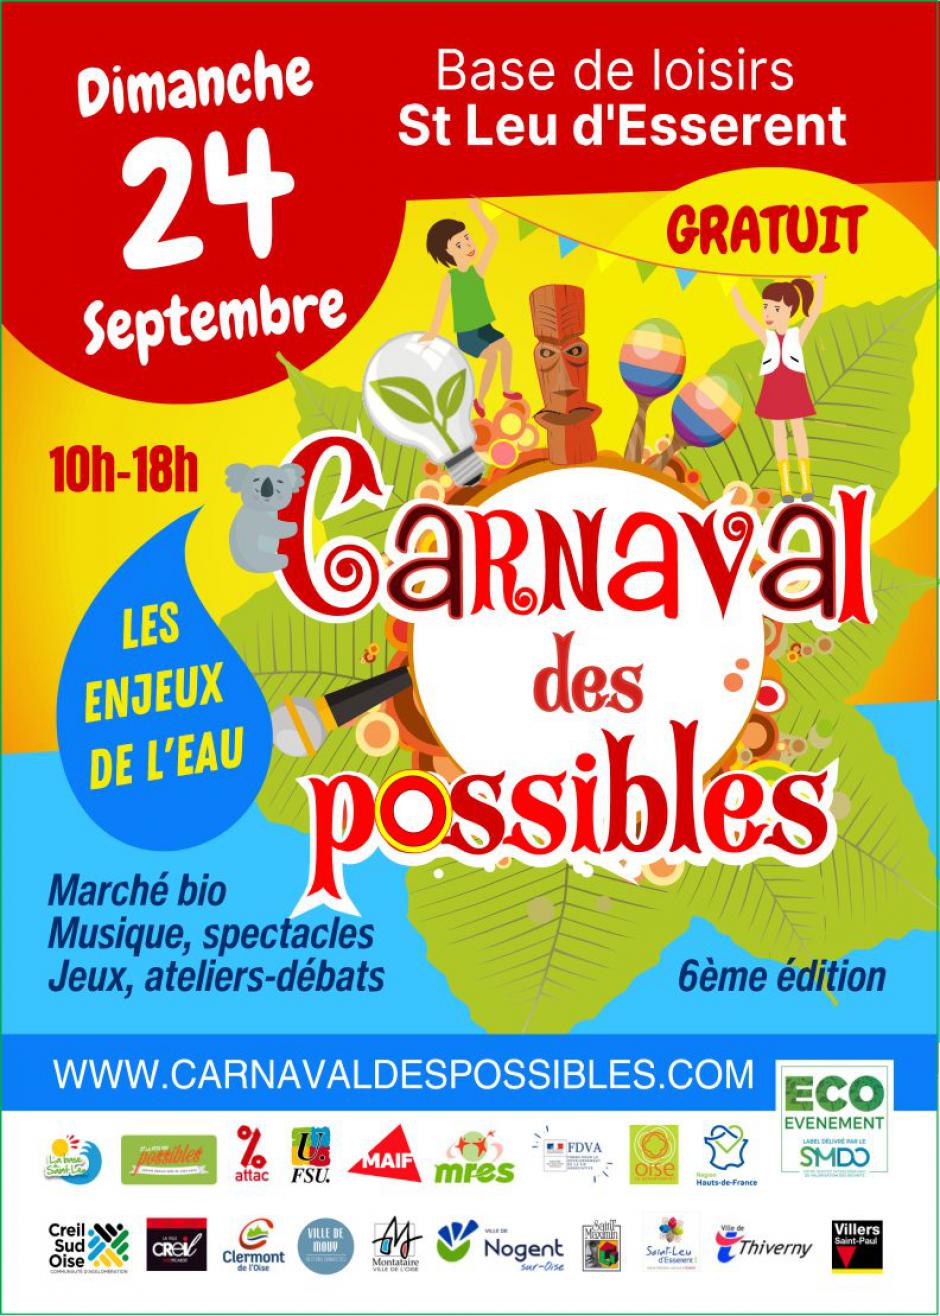 24 septembre, Saint-Leu-d'Esserent - 6e édition du Carnaval des possibles